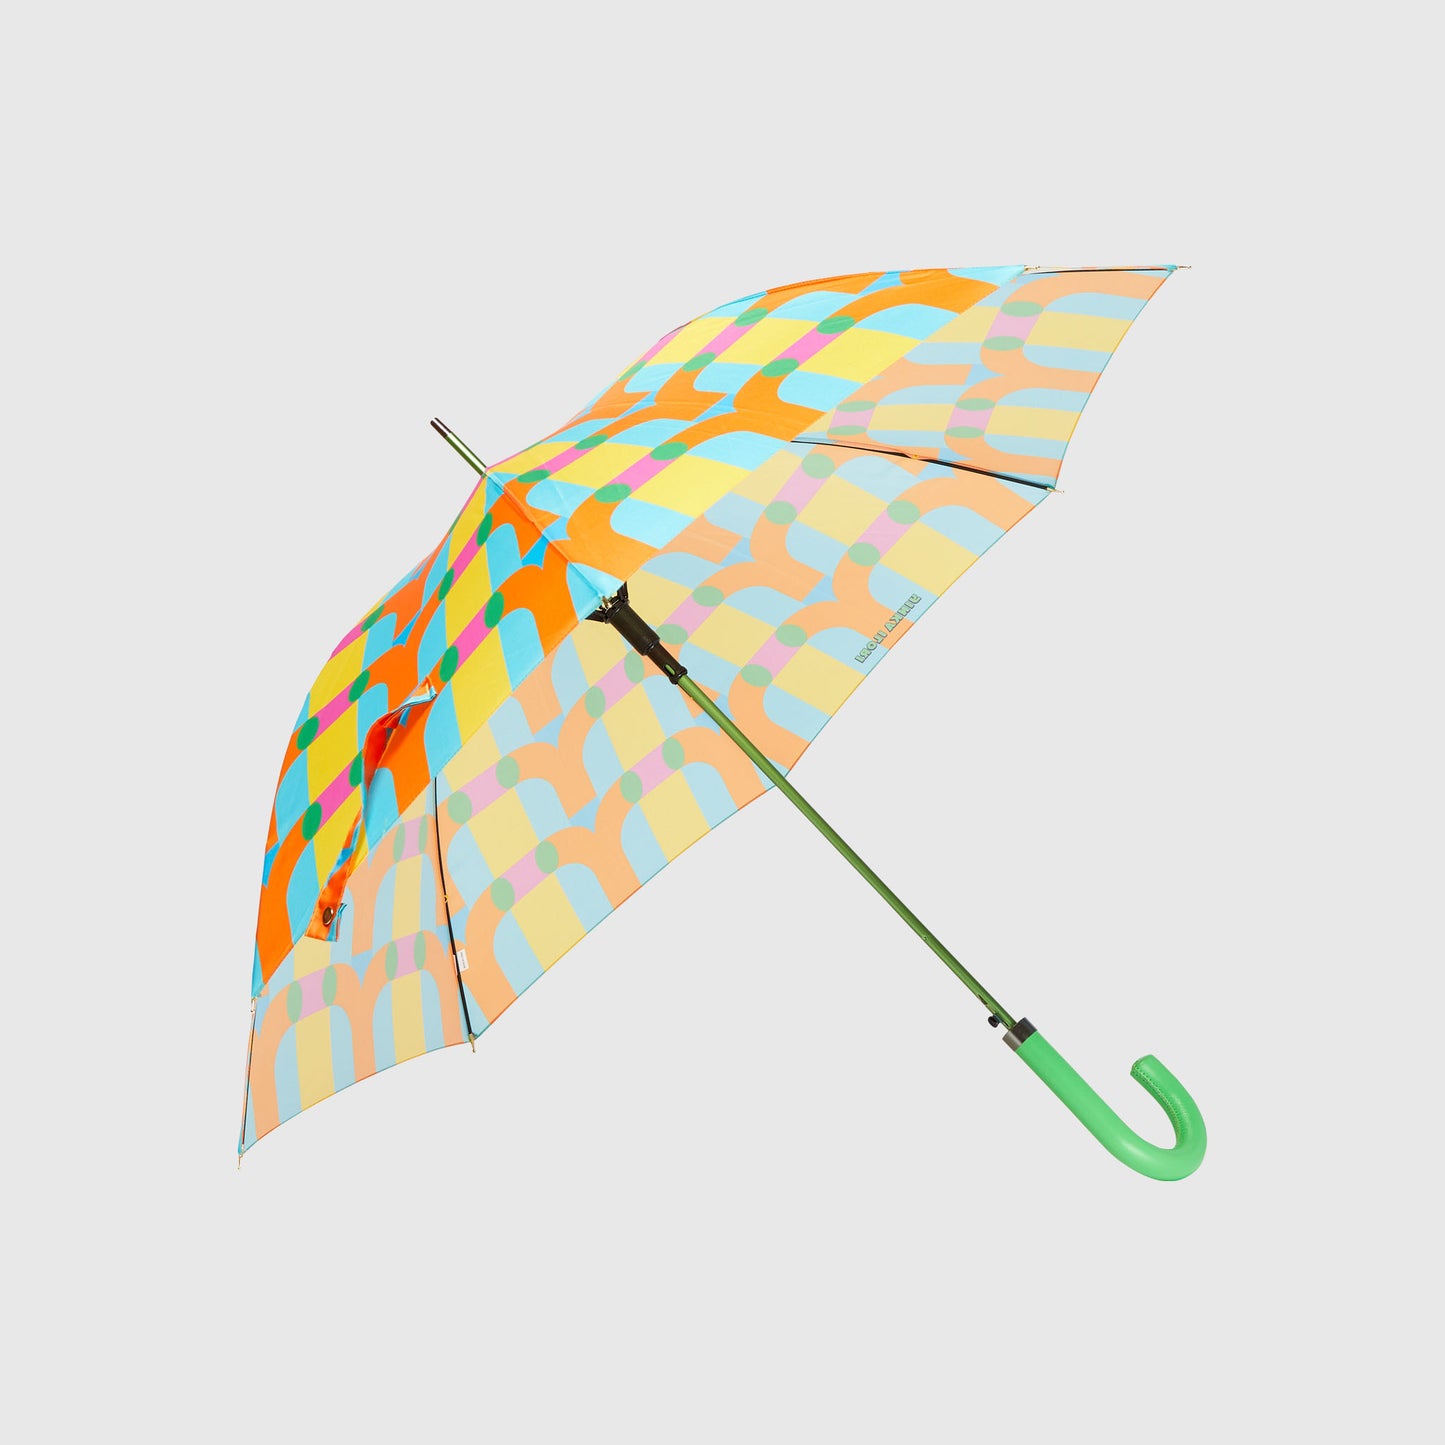 IGI Umbrella